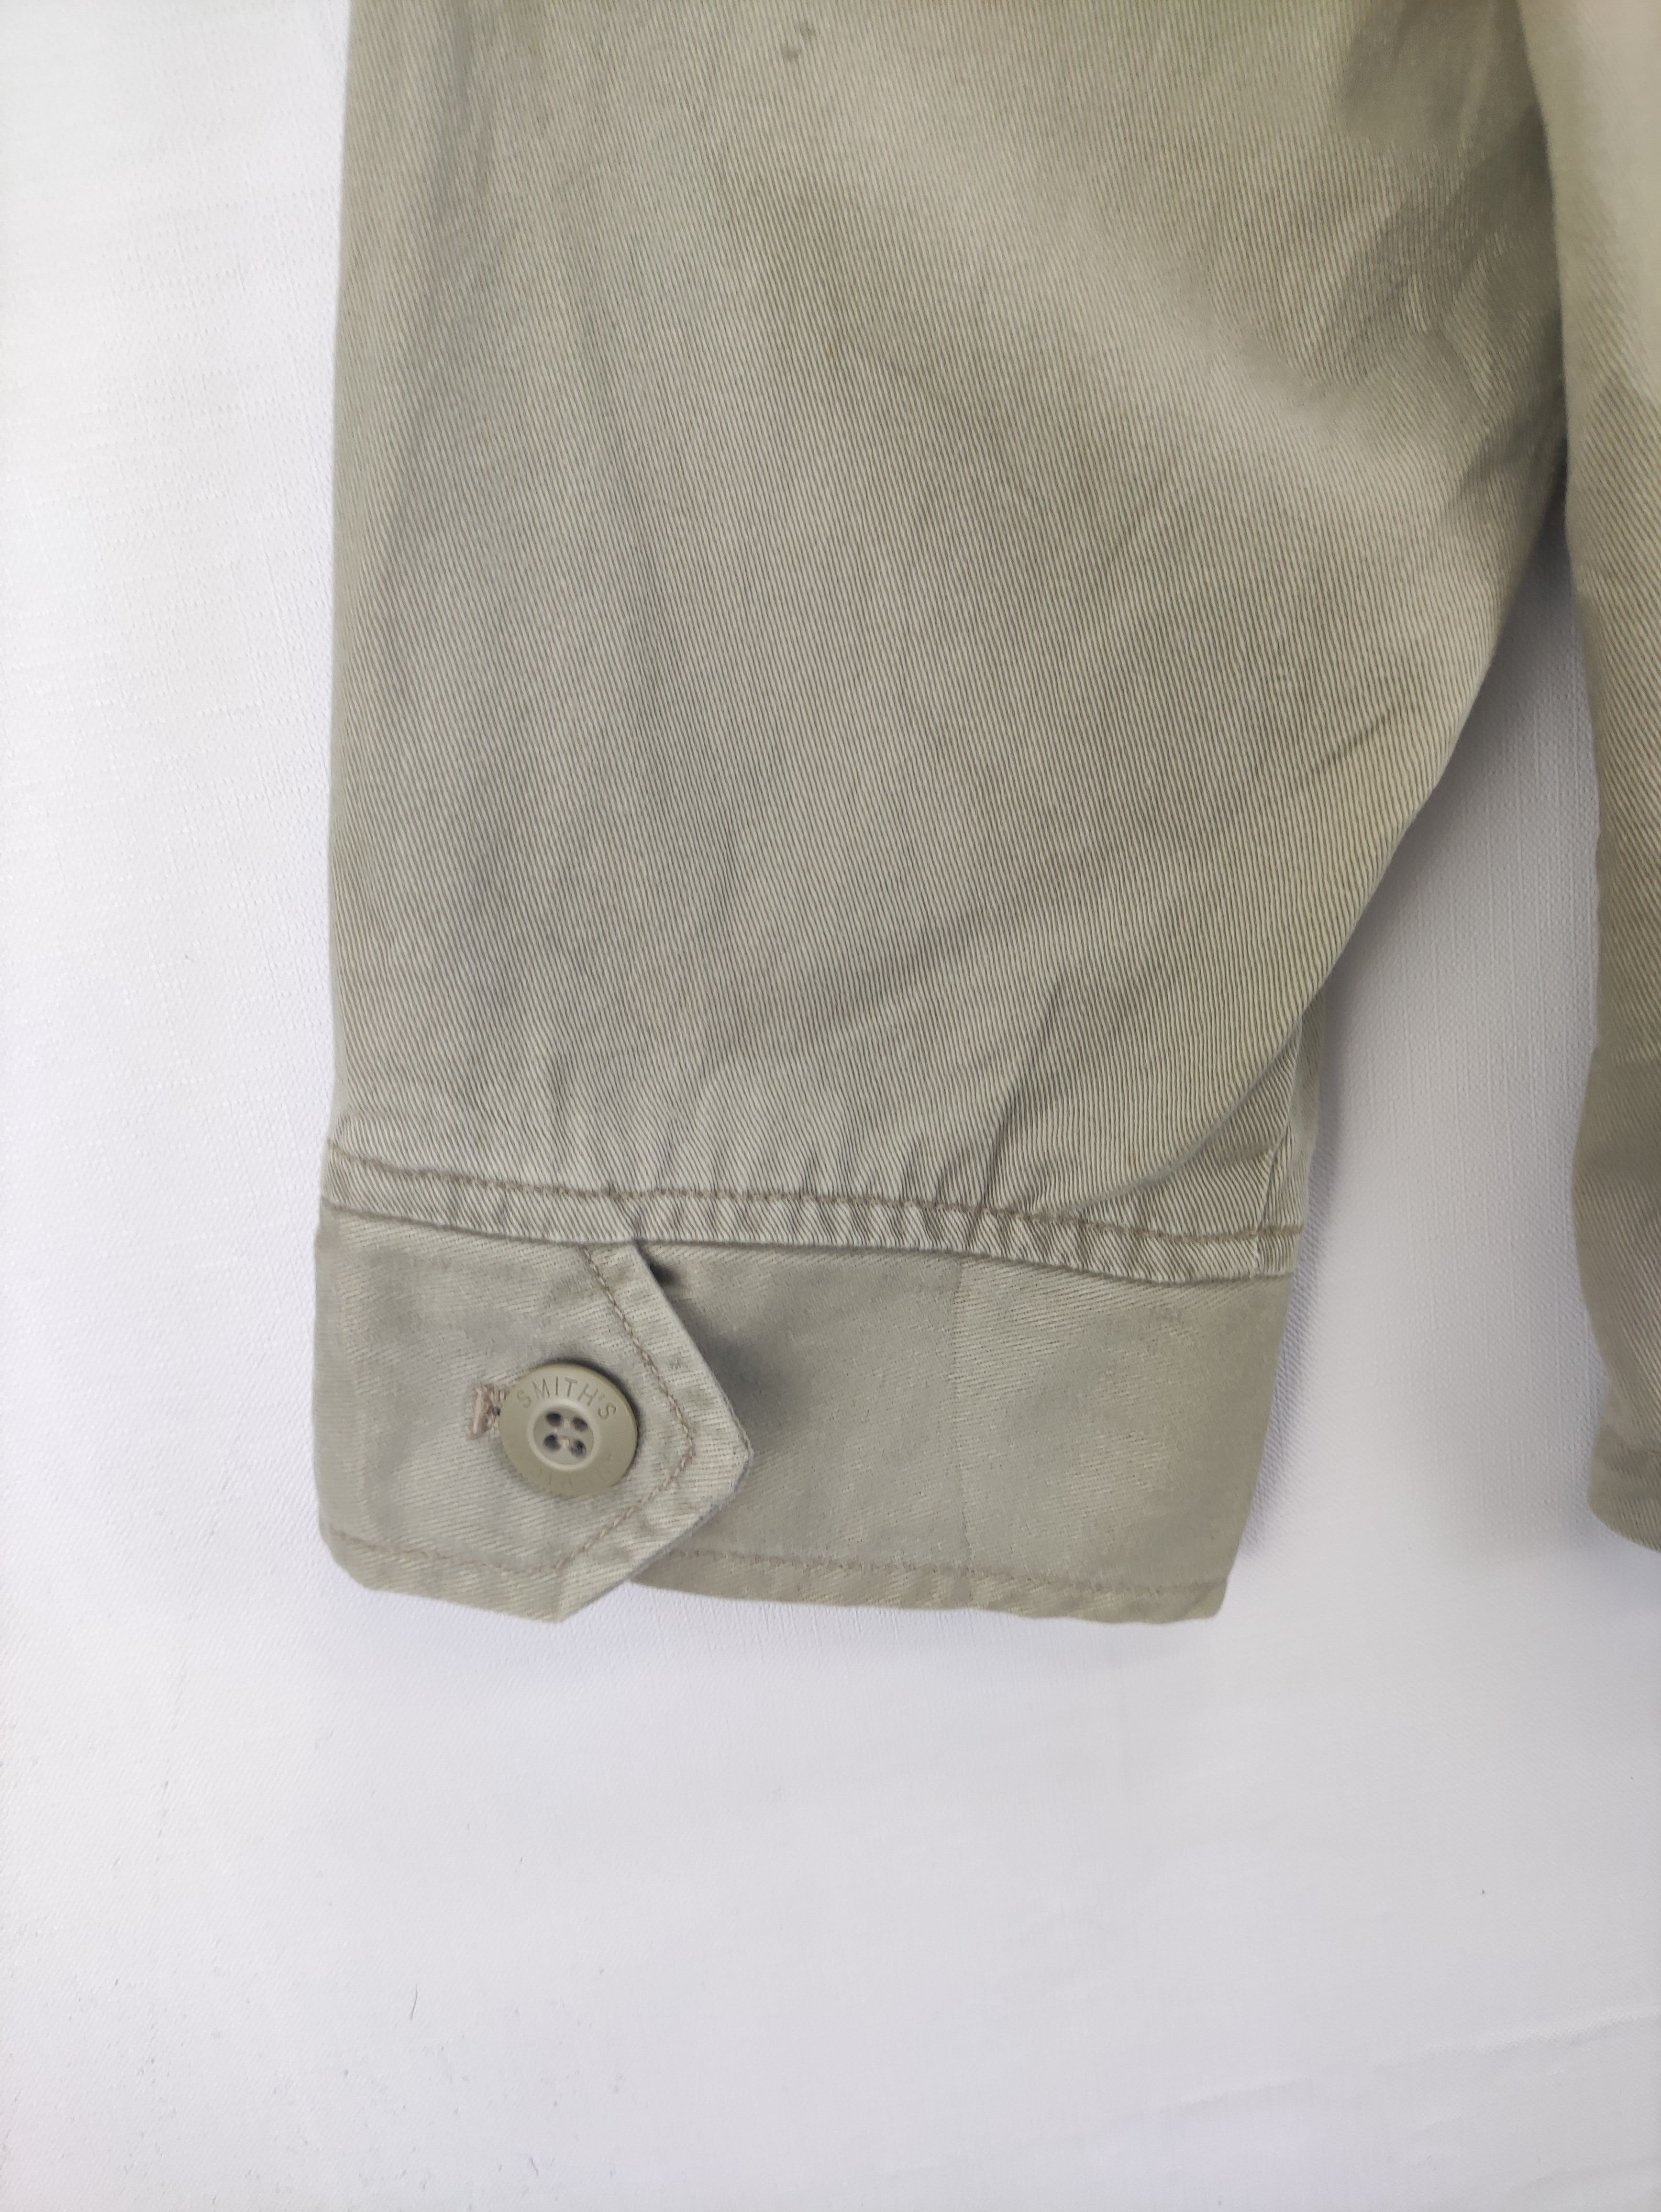 Vintage Smith's Work Wear Jacket Zipper - 9